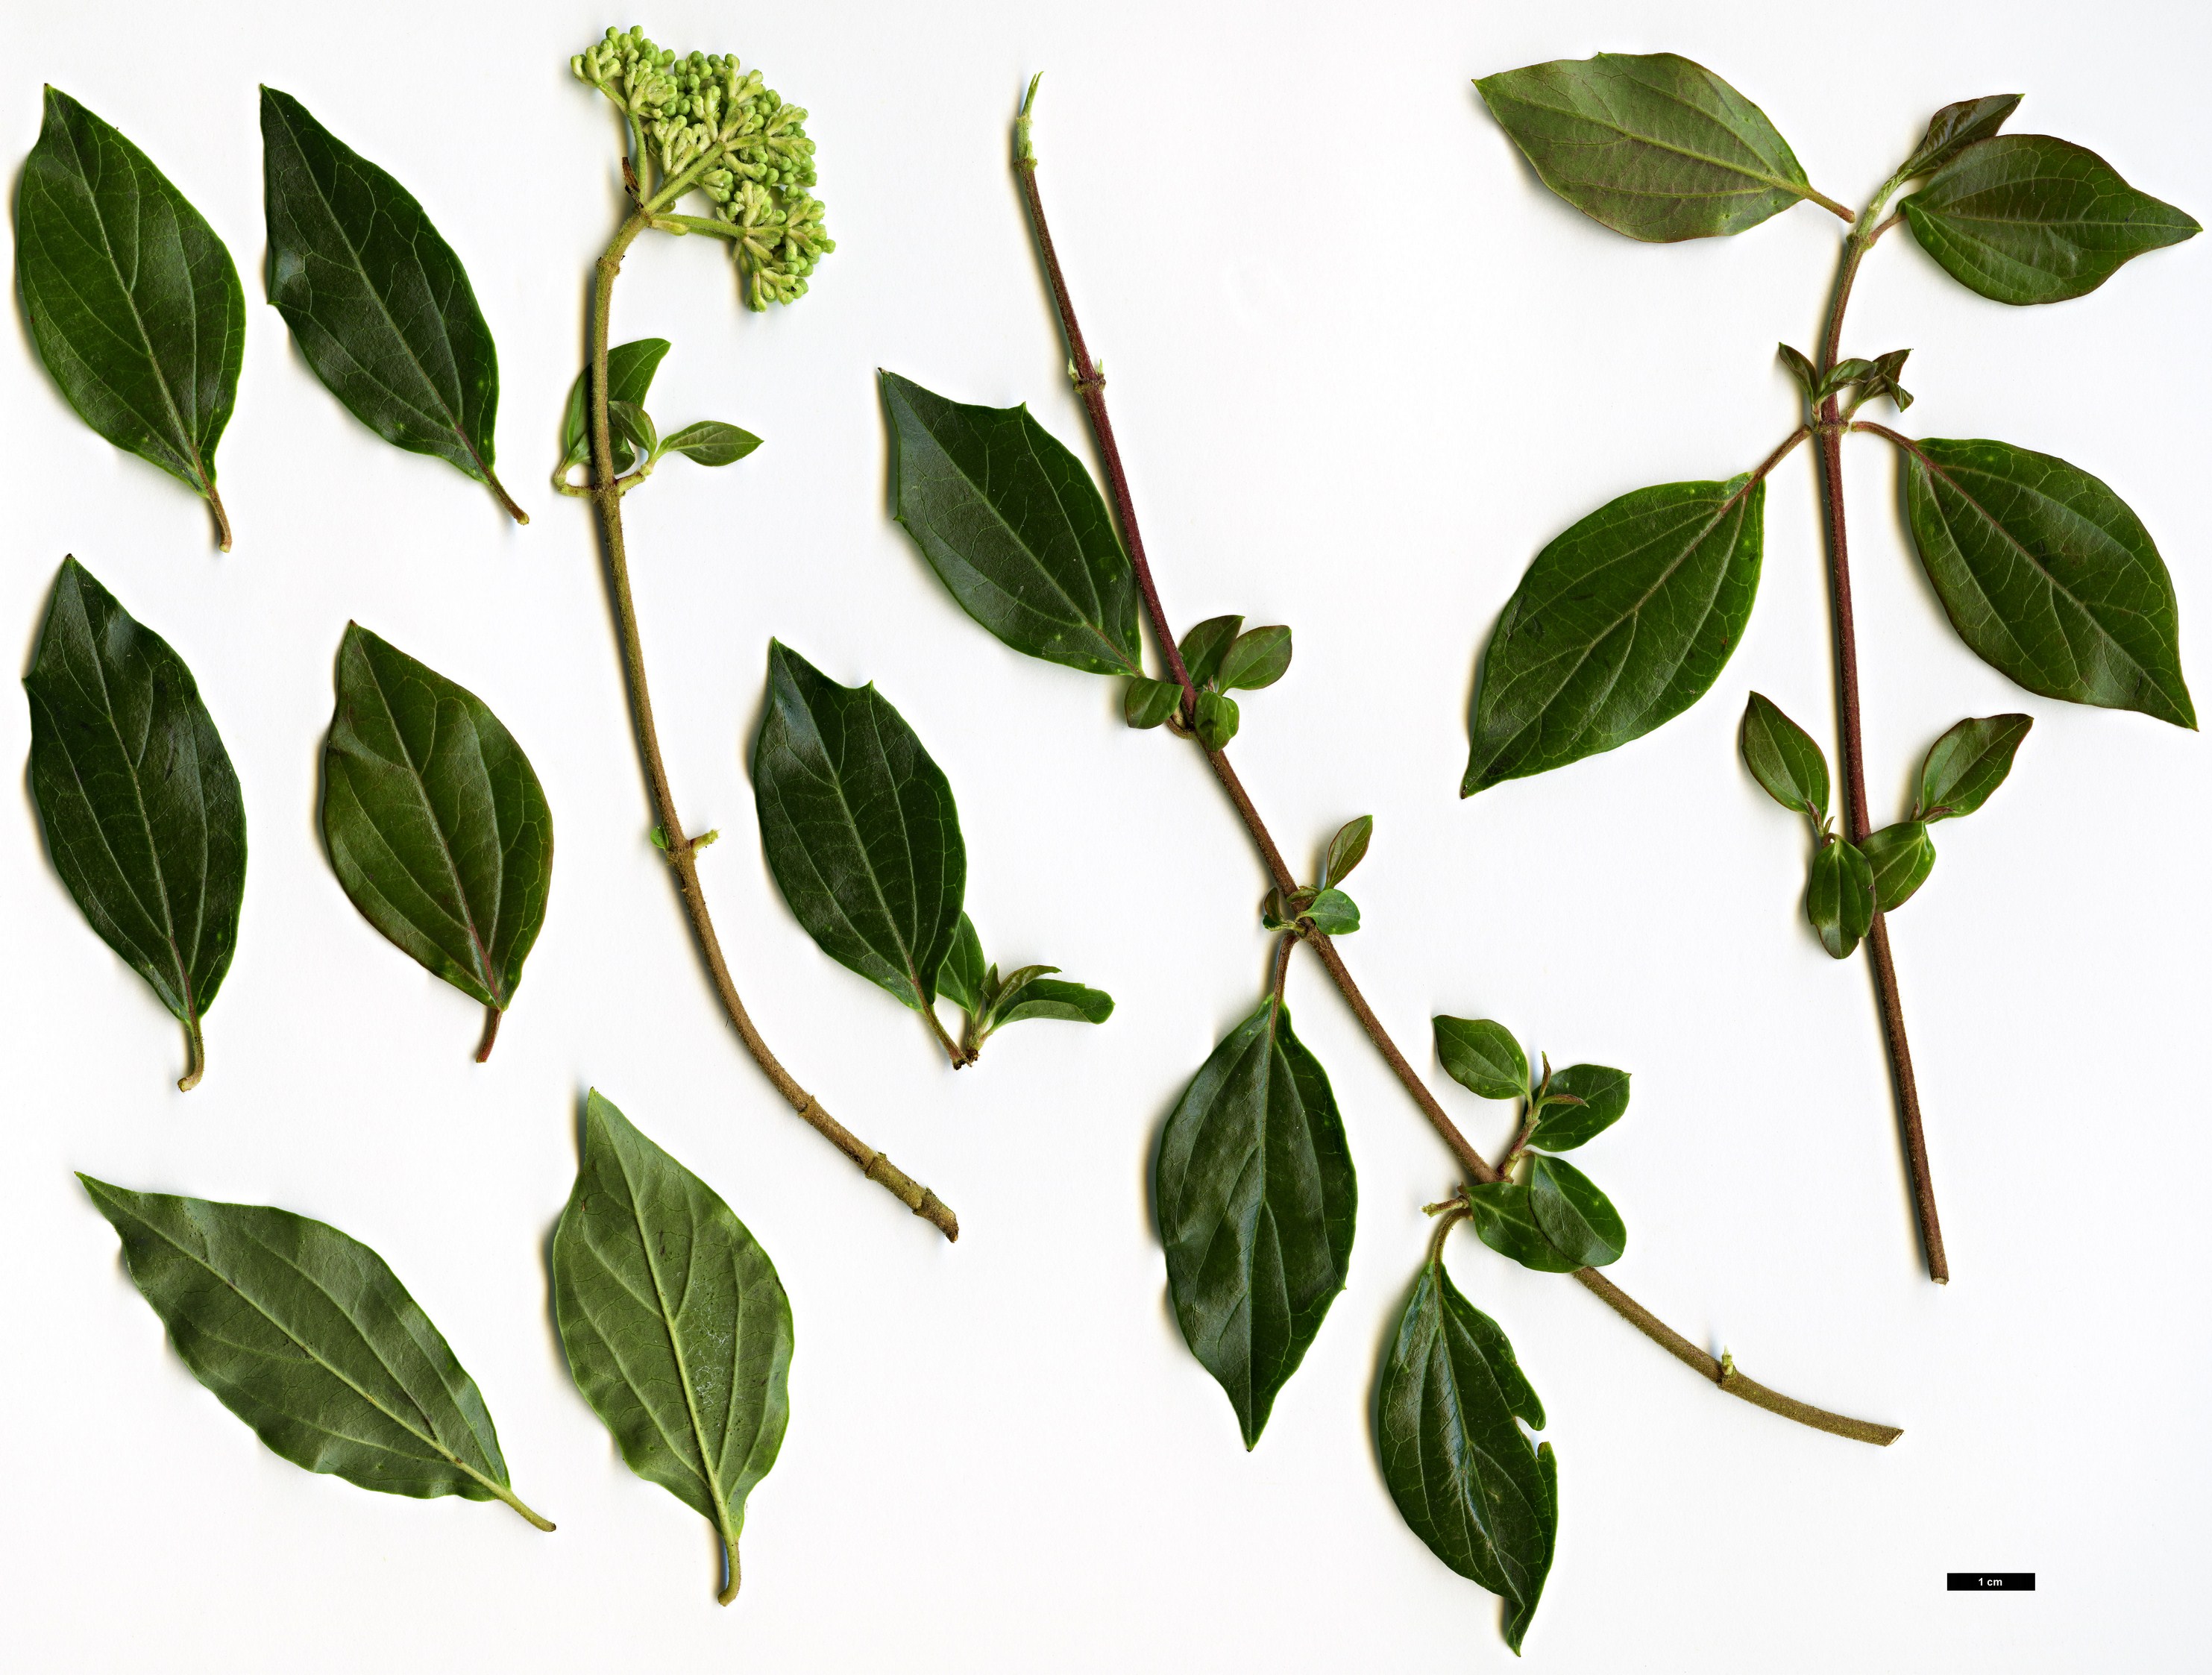 High resolution image: Family: Adoxaceae - Genus: Viburnum - Taxon: foetidum - SpeciesSub: var. rectangulatum